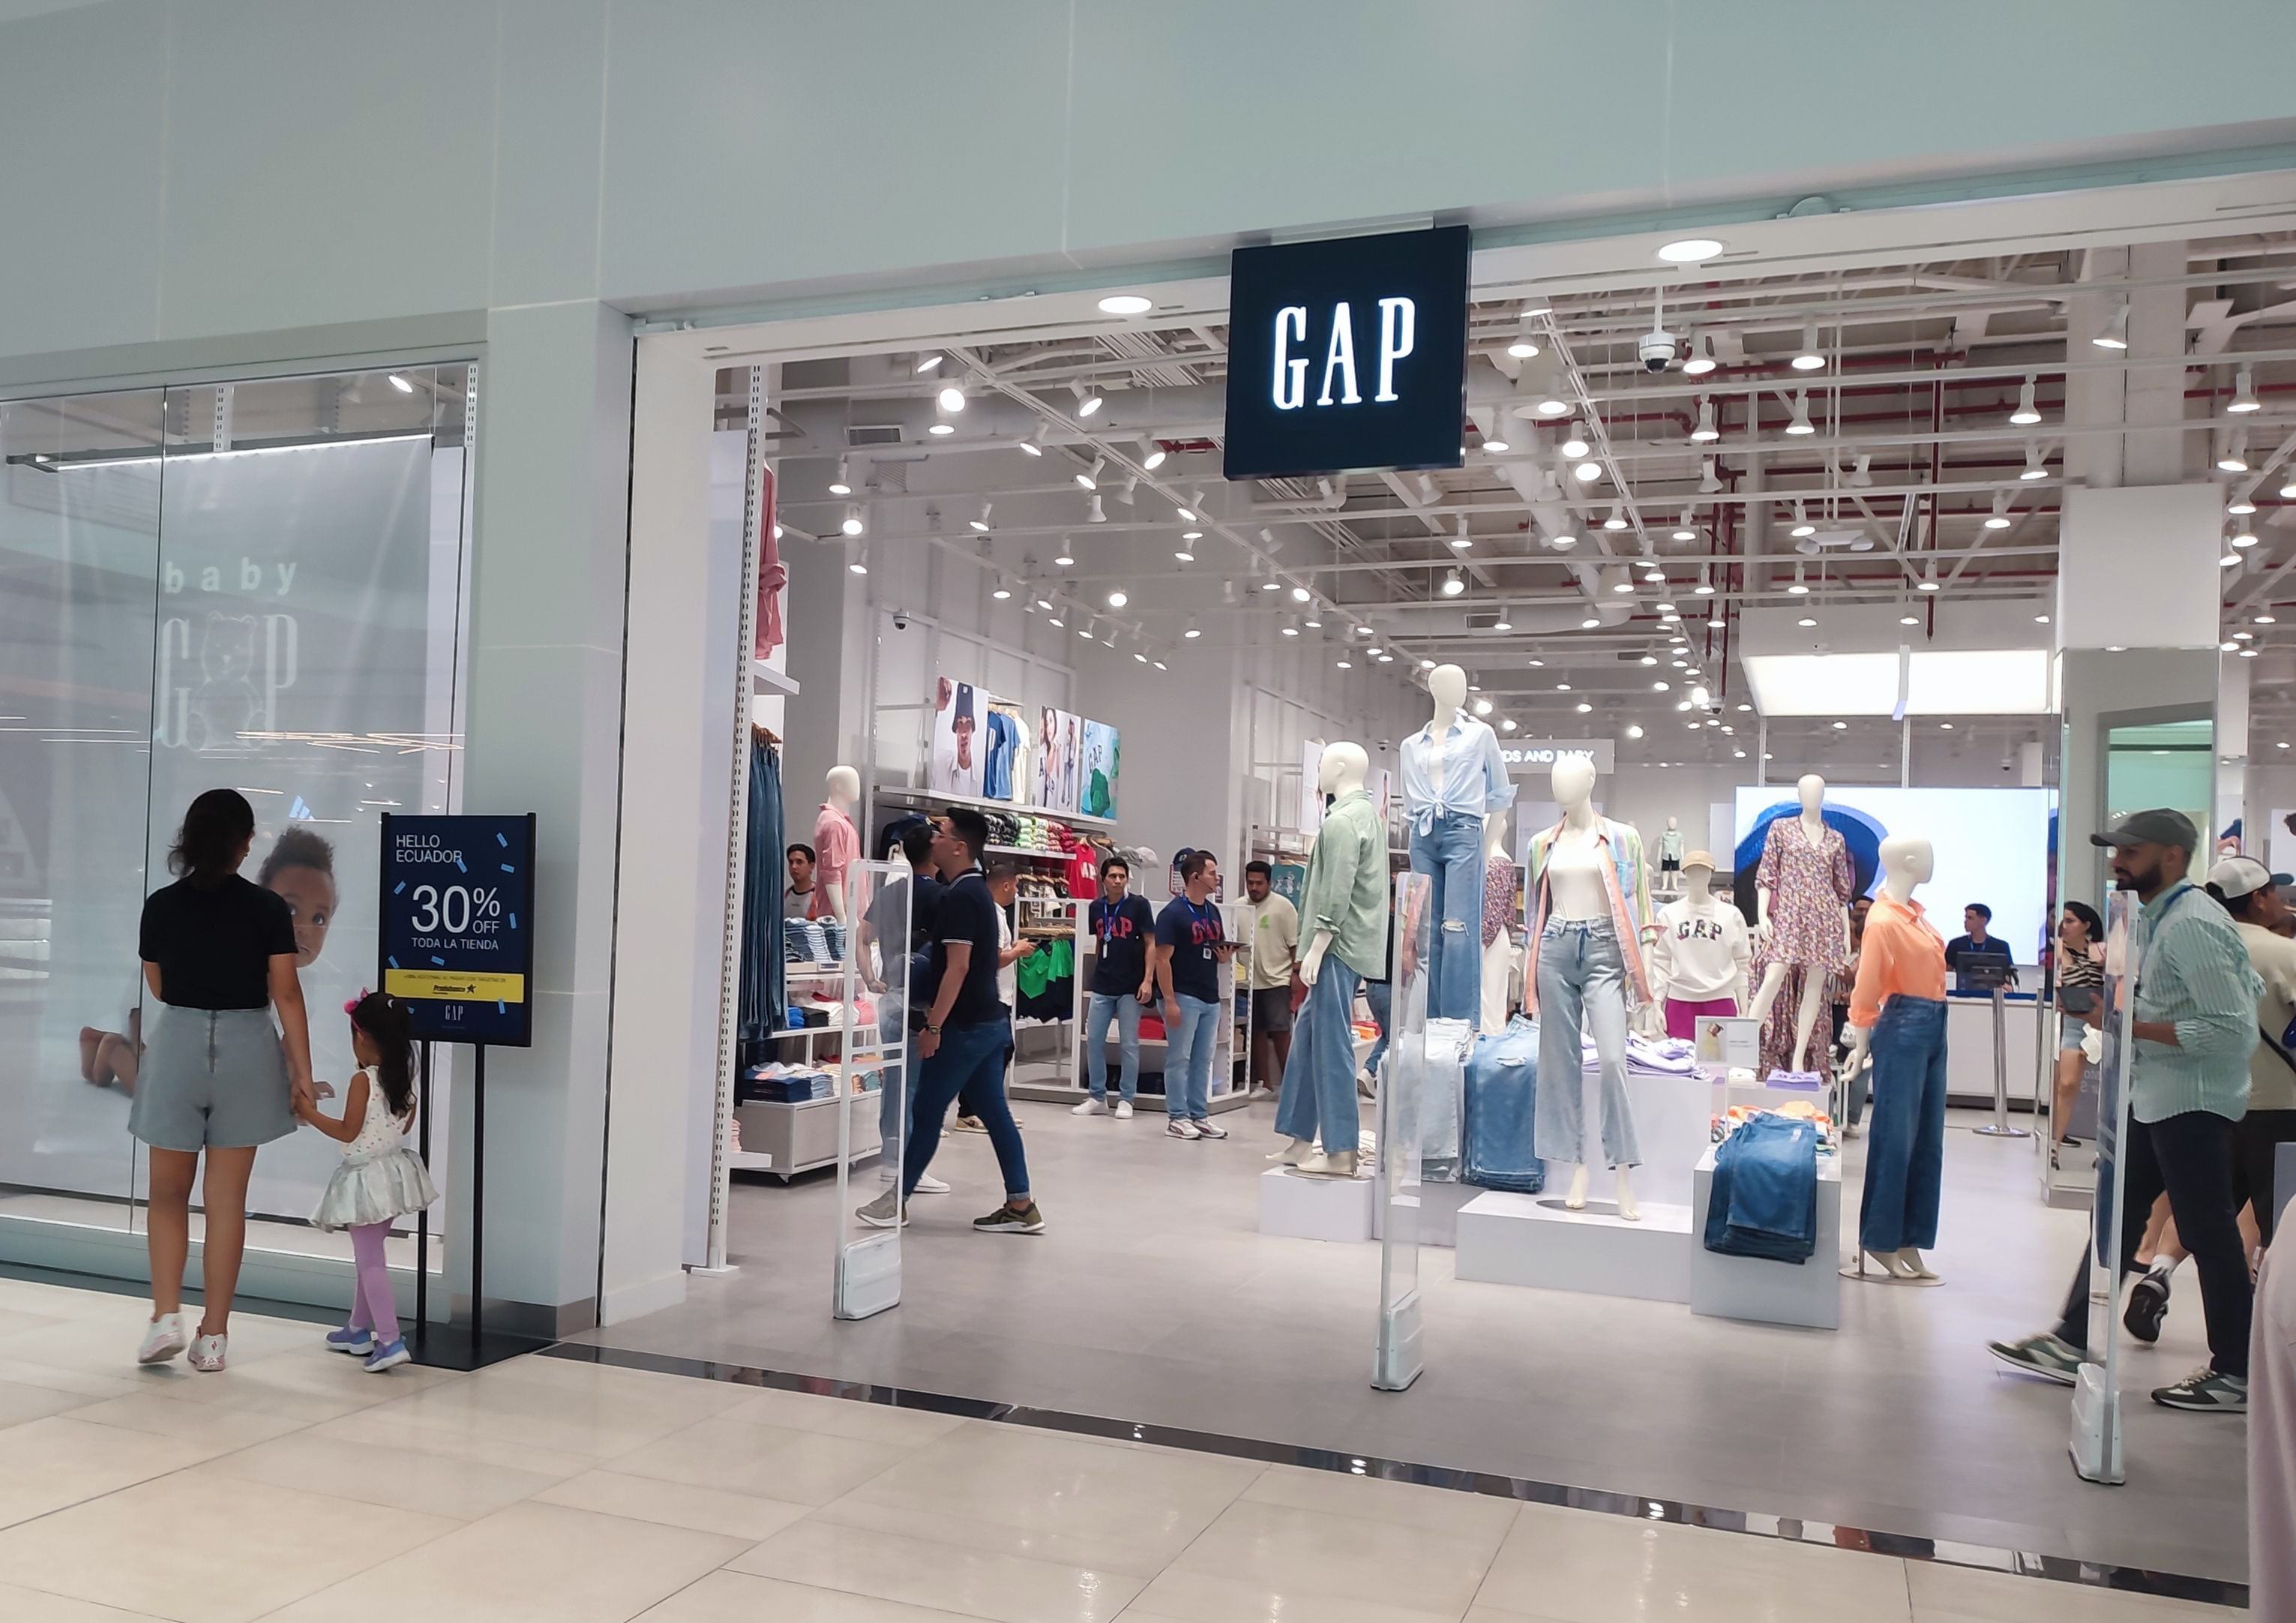 Contrapartida Mierda Disturbio GAP ya está en Ecuador, su primera tienda abrió en el Mall del Sol |  Economía | Noticias | El Universo